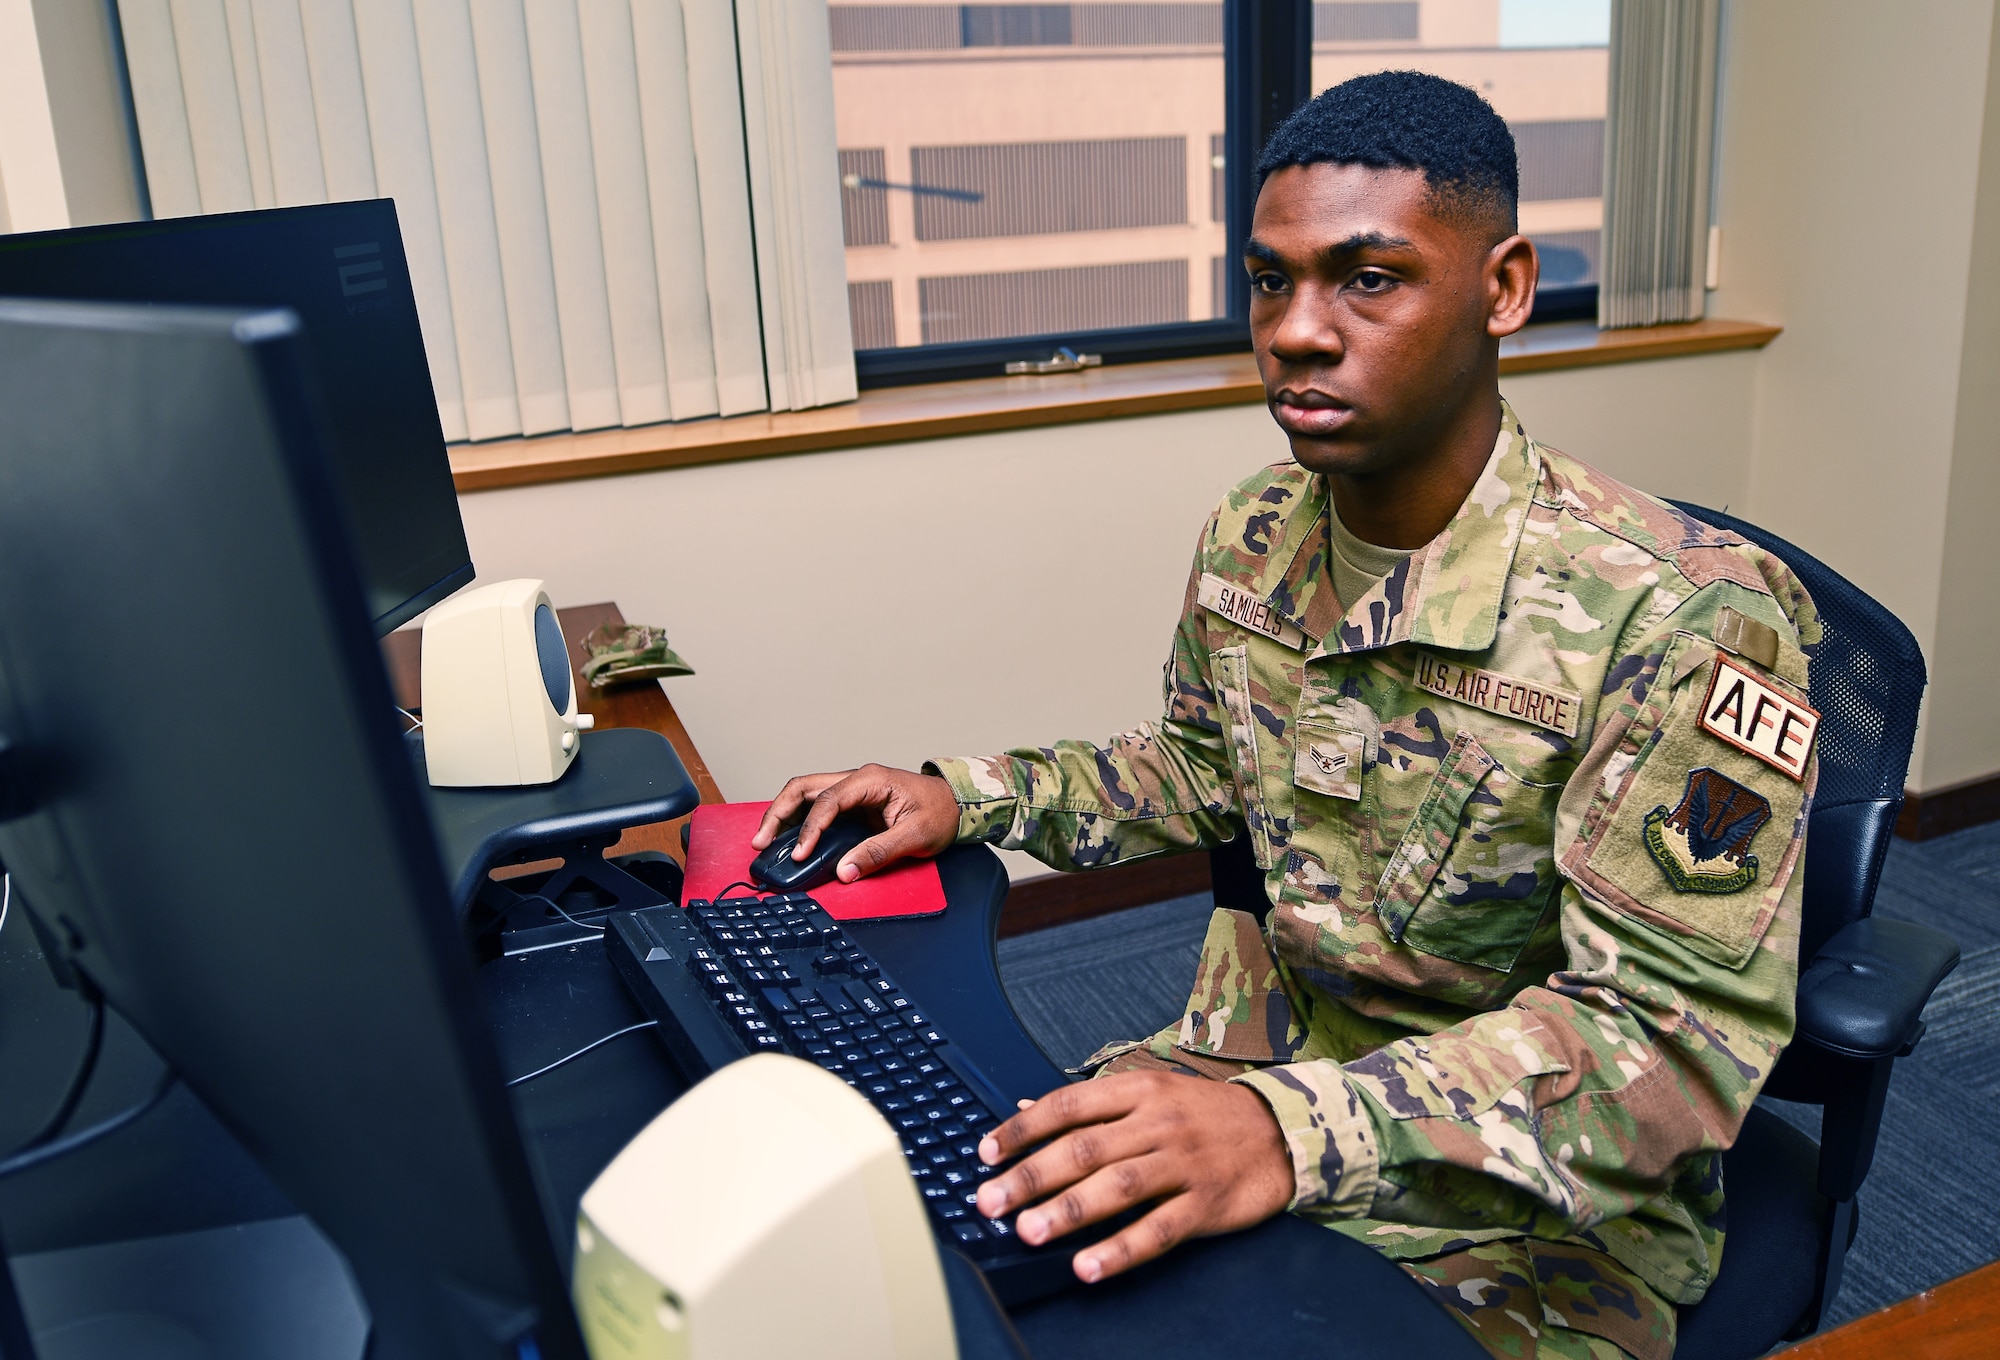 An airman takes a test at a computer